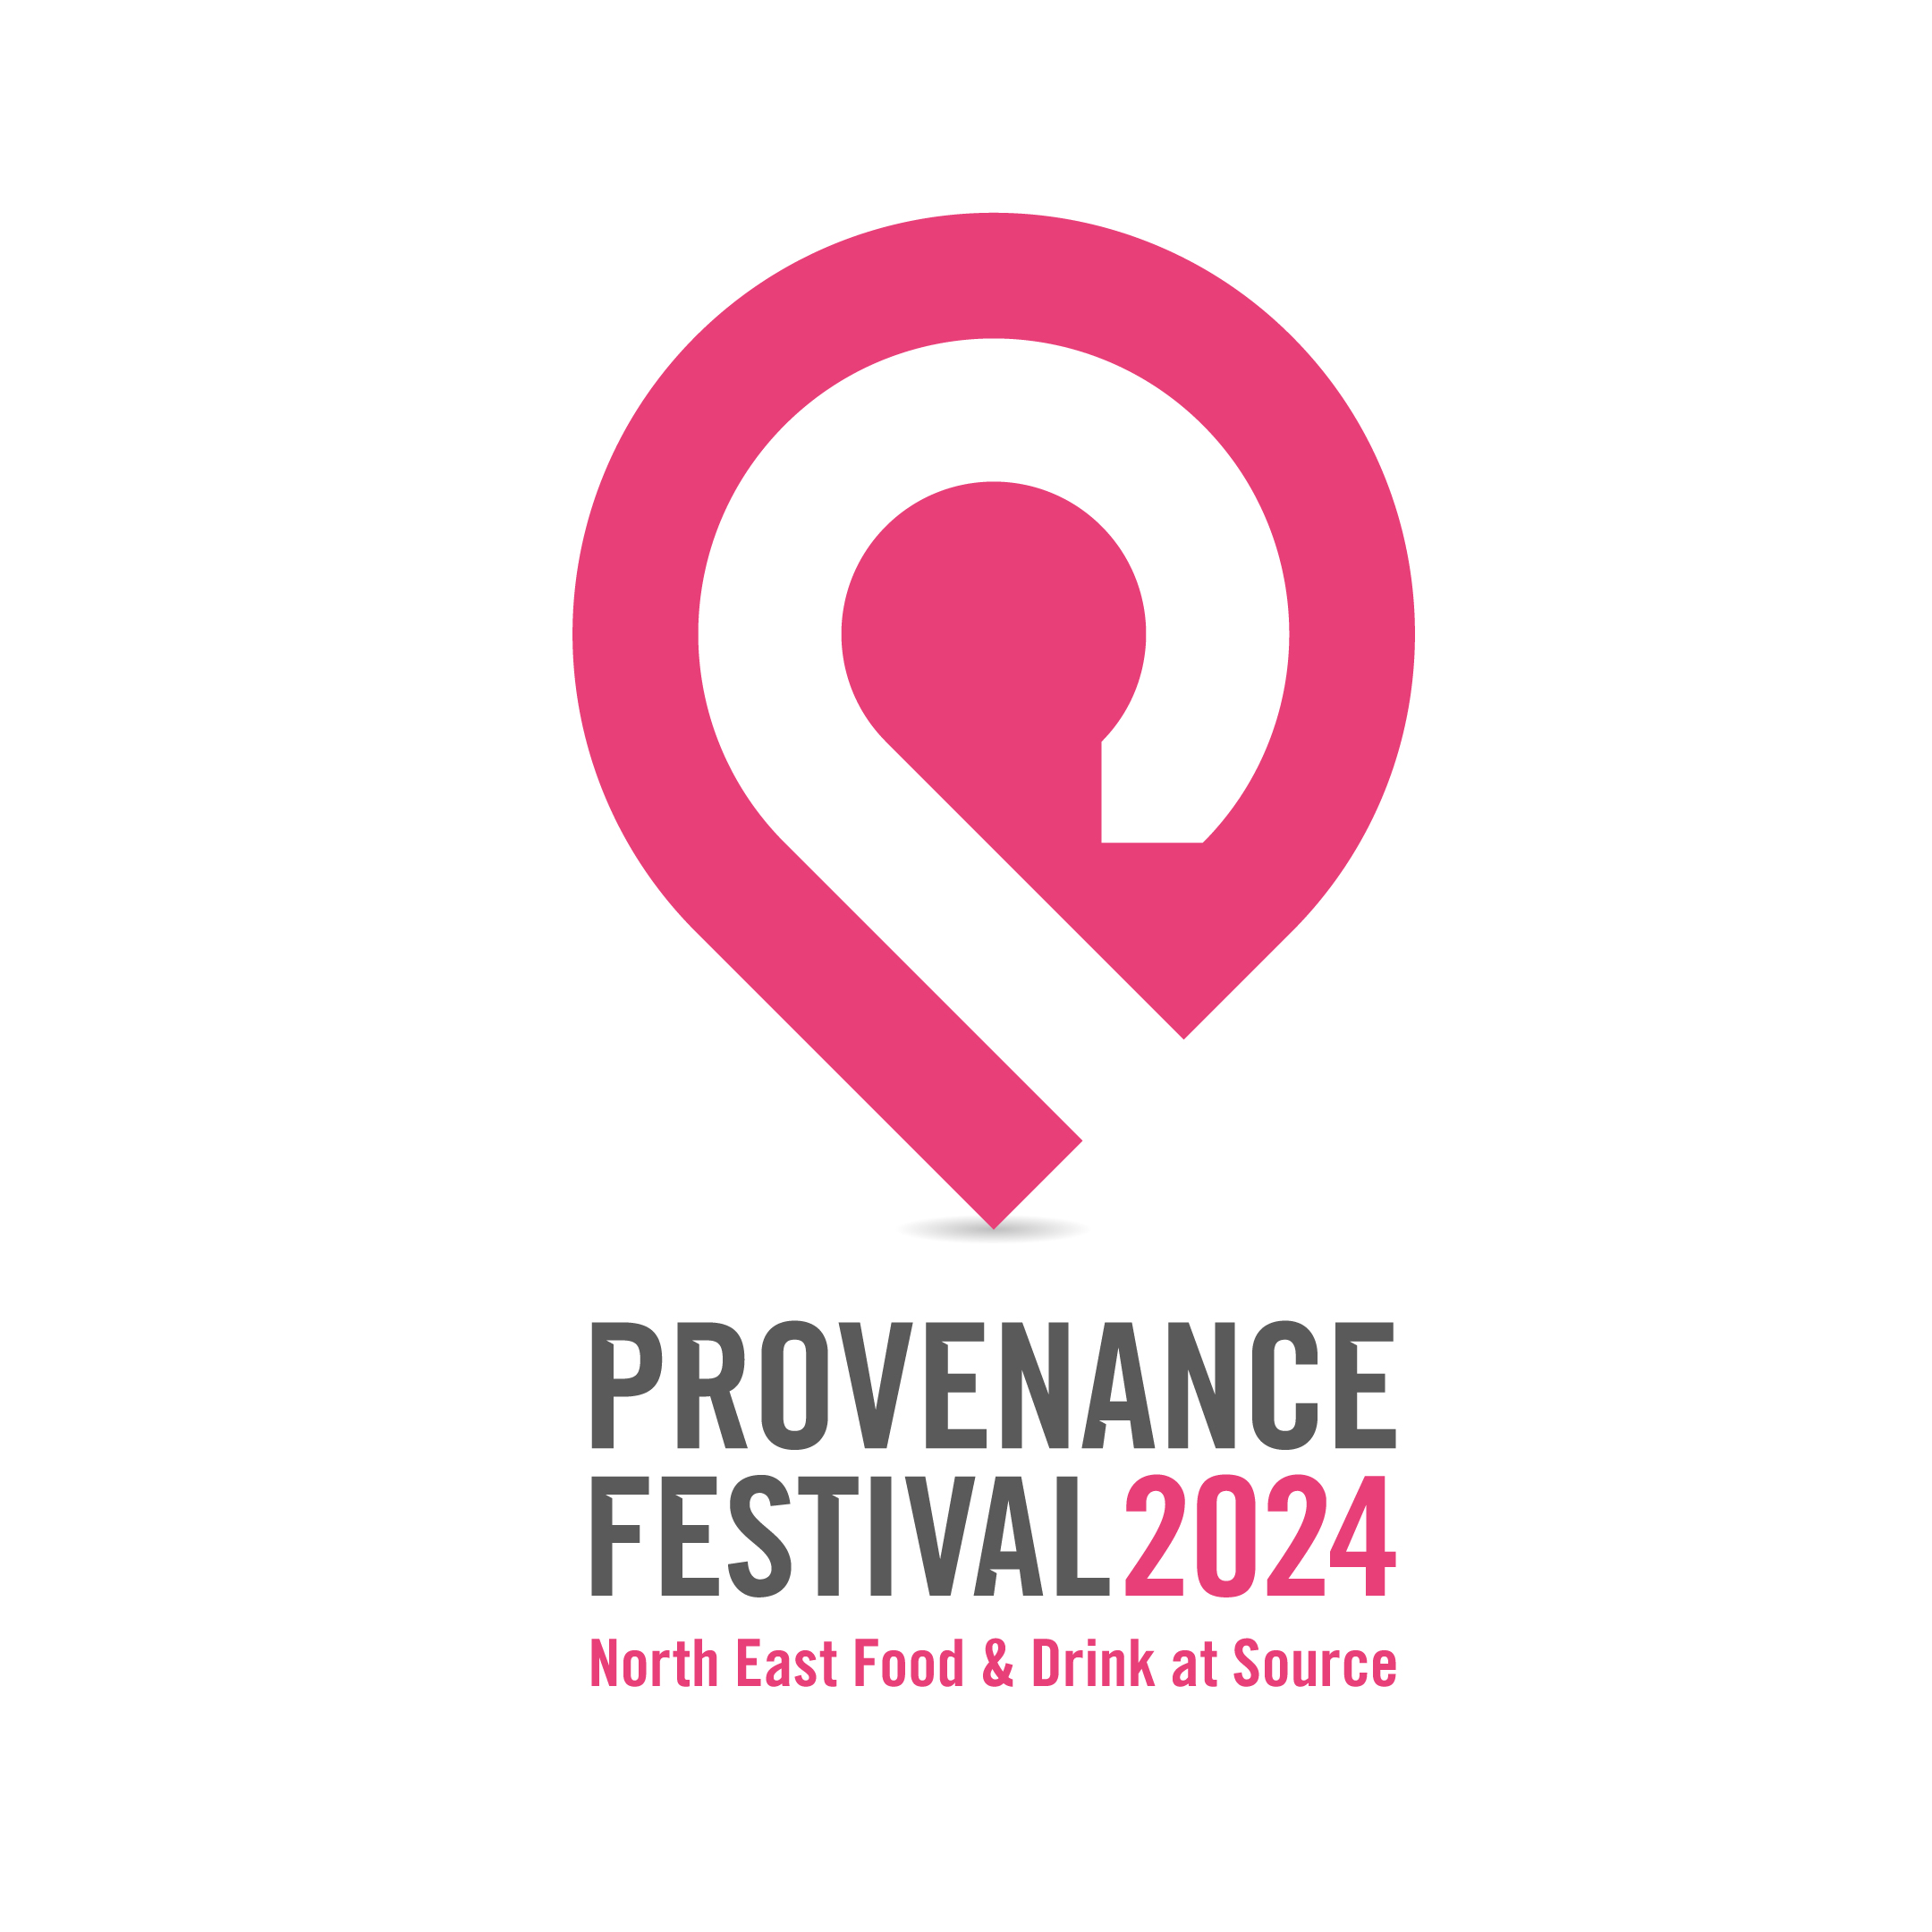 Take part in Provenance Festival 2024